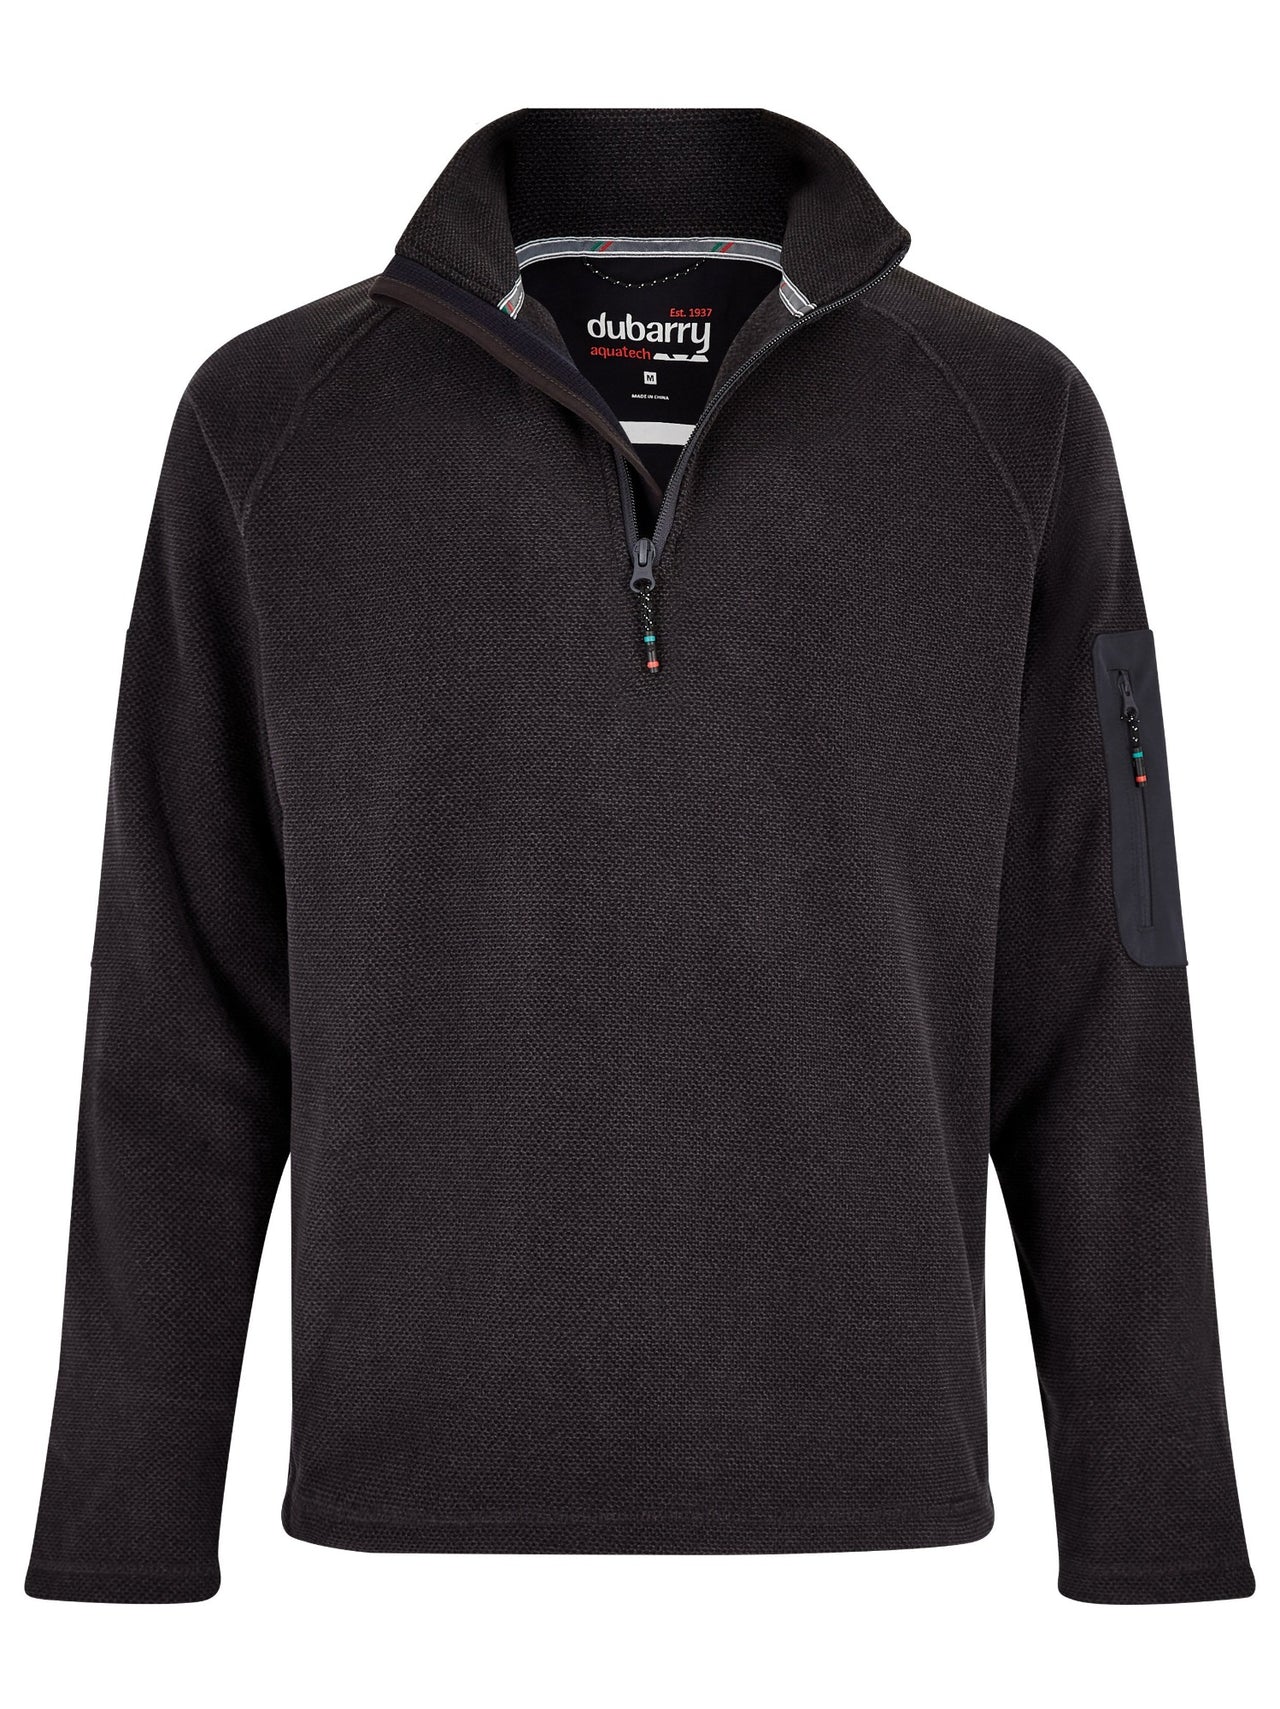 DUBARRY Monaco Unisex 1/4 zip Fleece Sweater (Online only)*